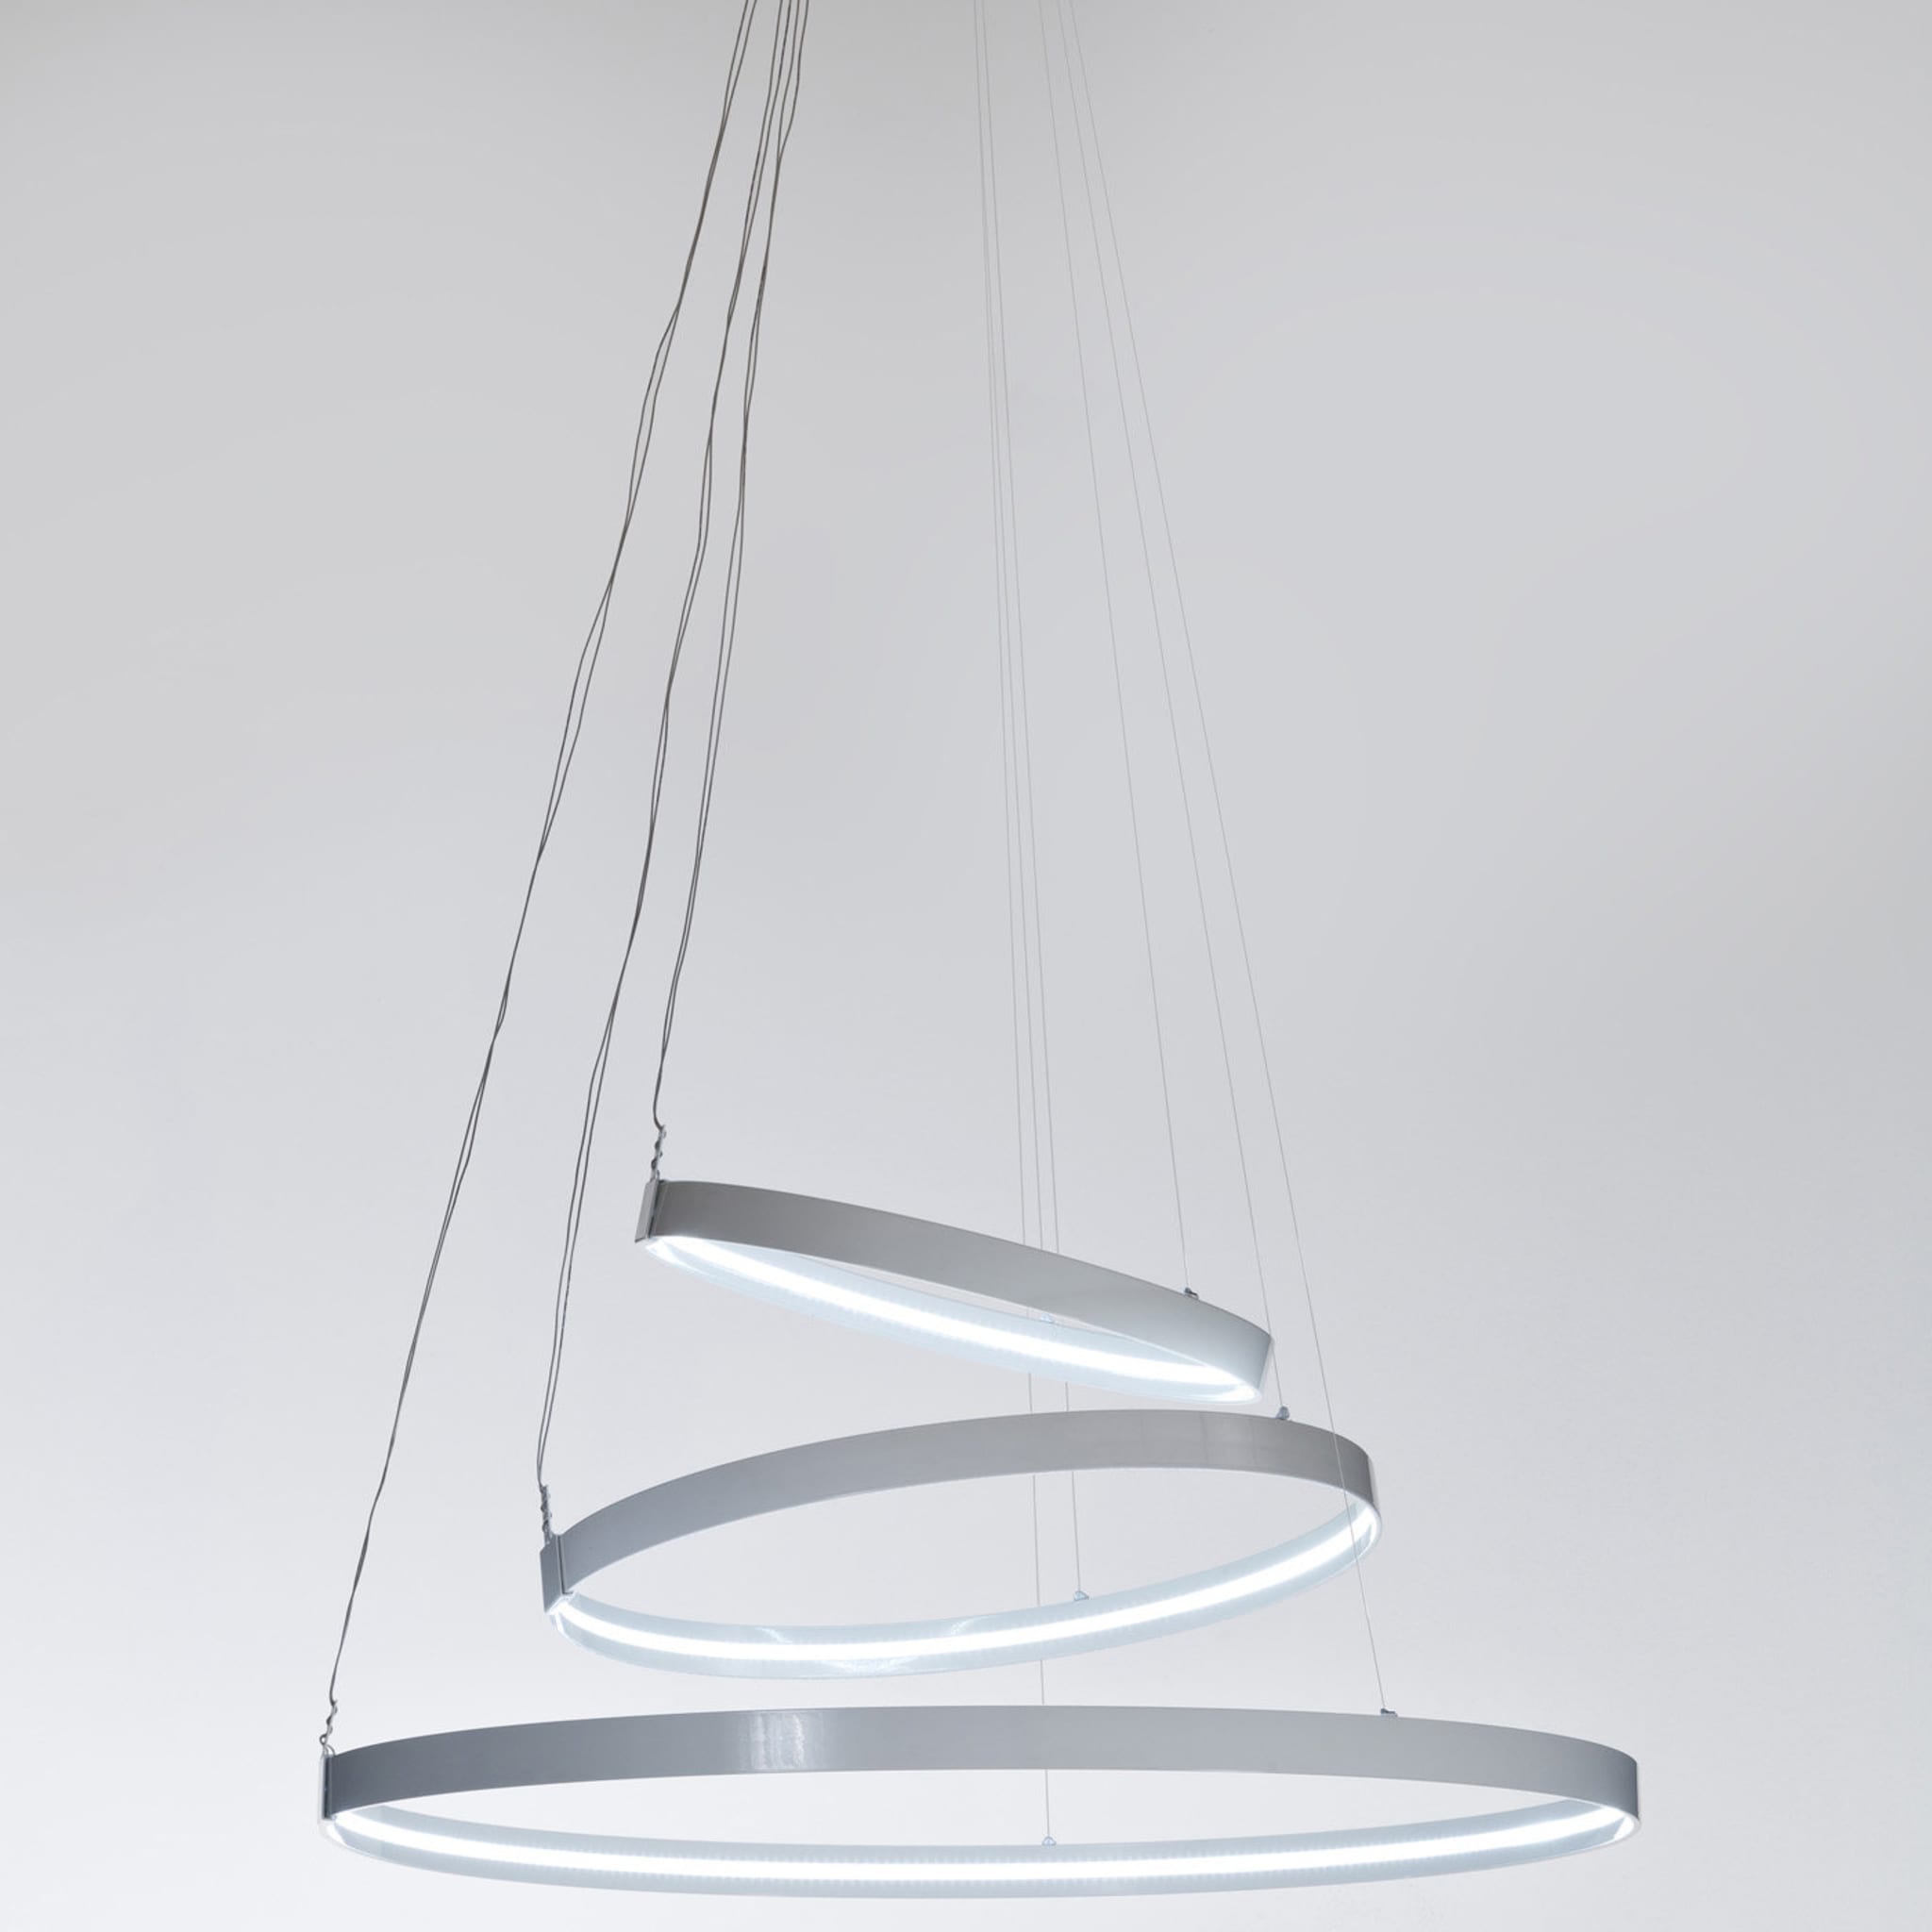 Rings Orizzontale White Pendant Lamp by Valerio Cometti - V12 Design - Alternative view 1